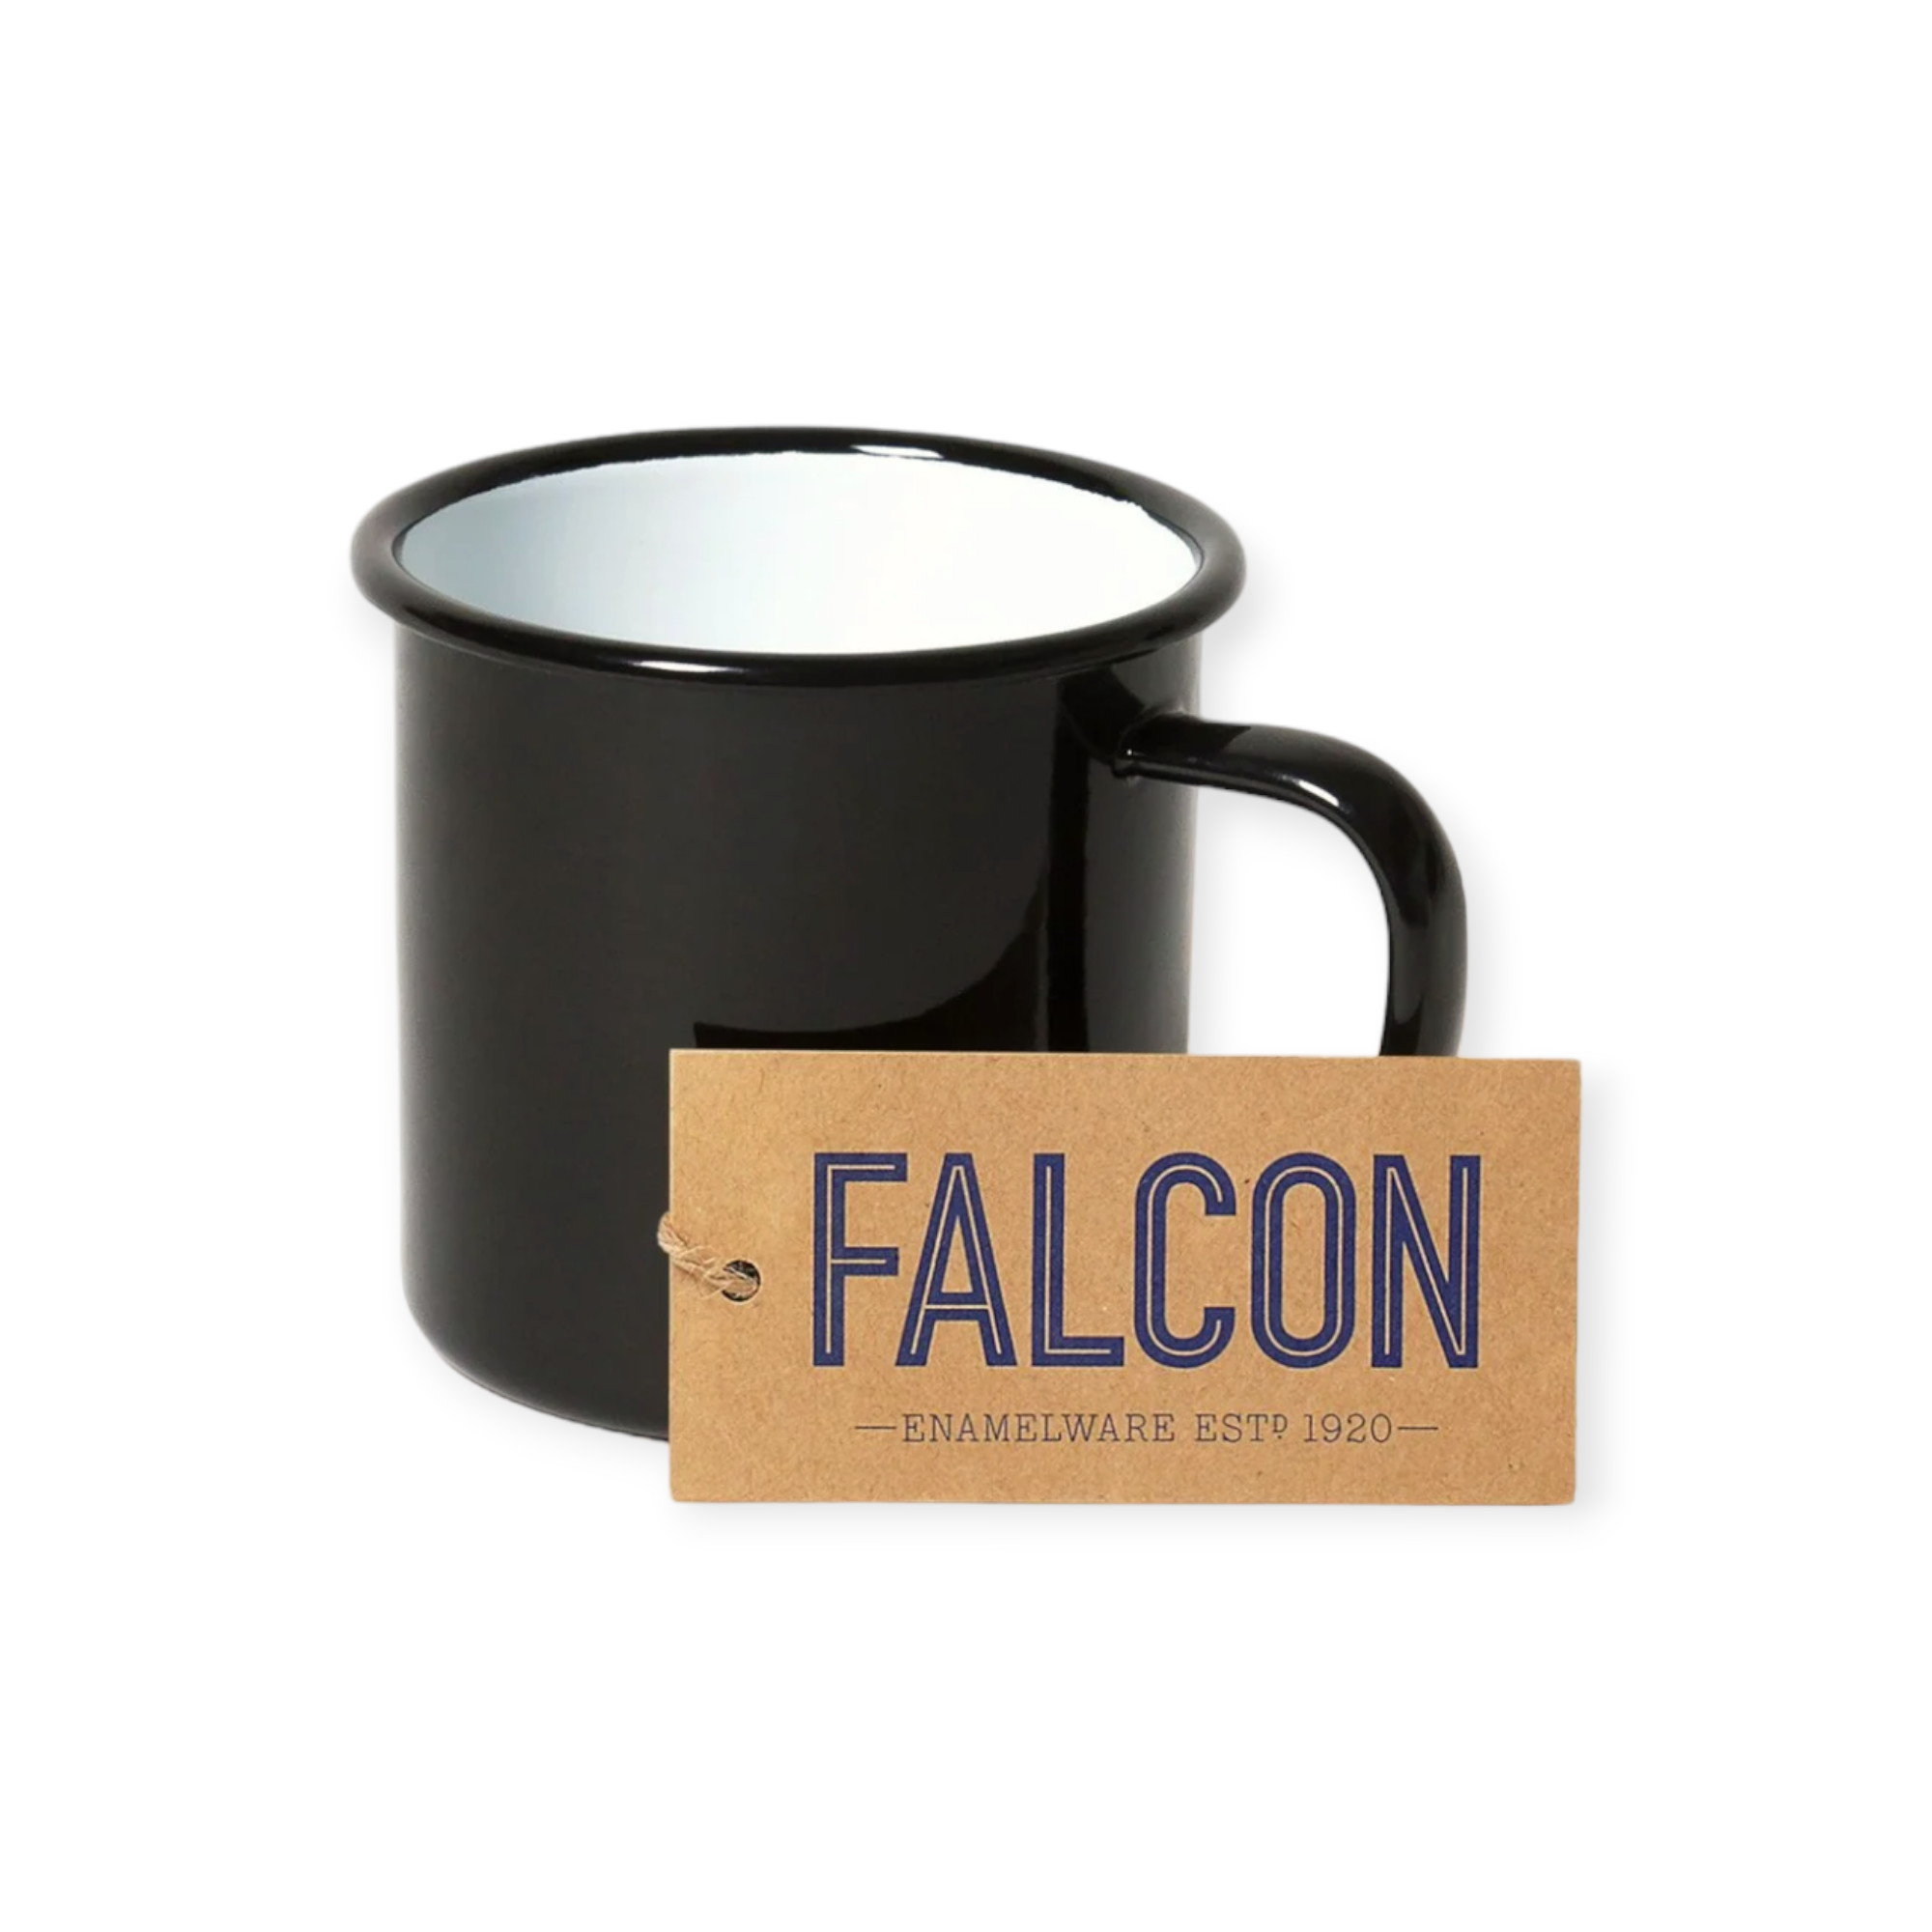 Falcon - 琺瑯馬克杯 - Coal Black